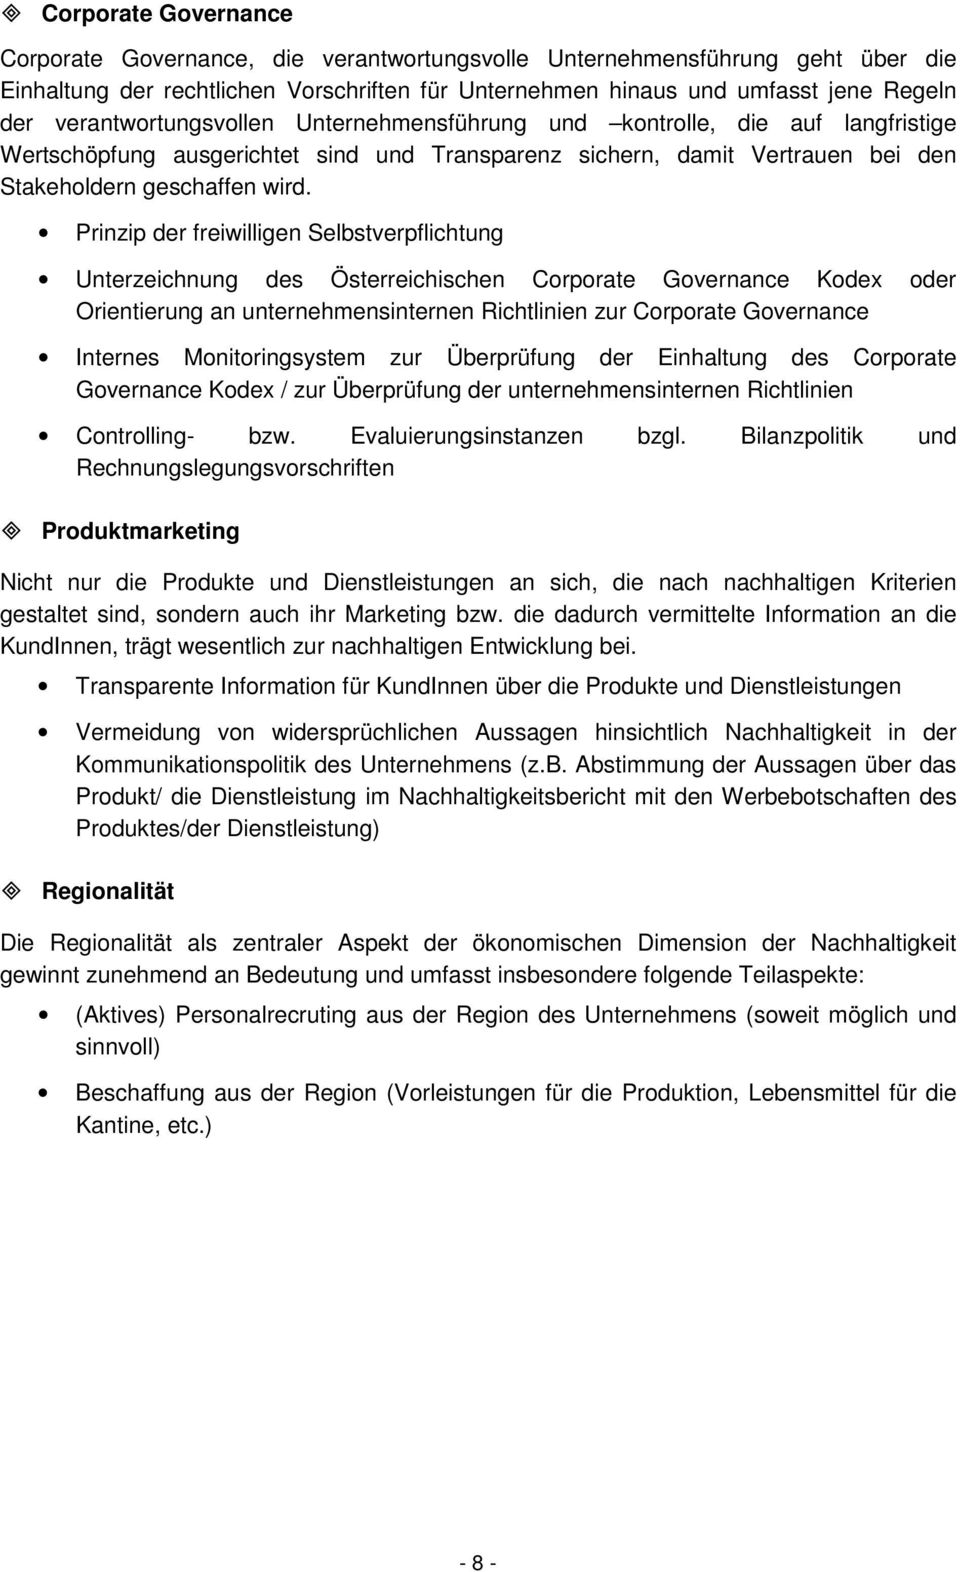 Prinzip der freiwilligen Selbstverpflichtung Unterzeichnung des Österreichischen Corporate Governance Kodex oder Orientierung an unternehmensinternen Richtlinien zur Corporate Governance Internes